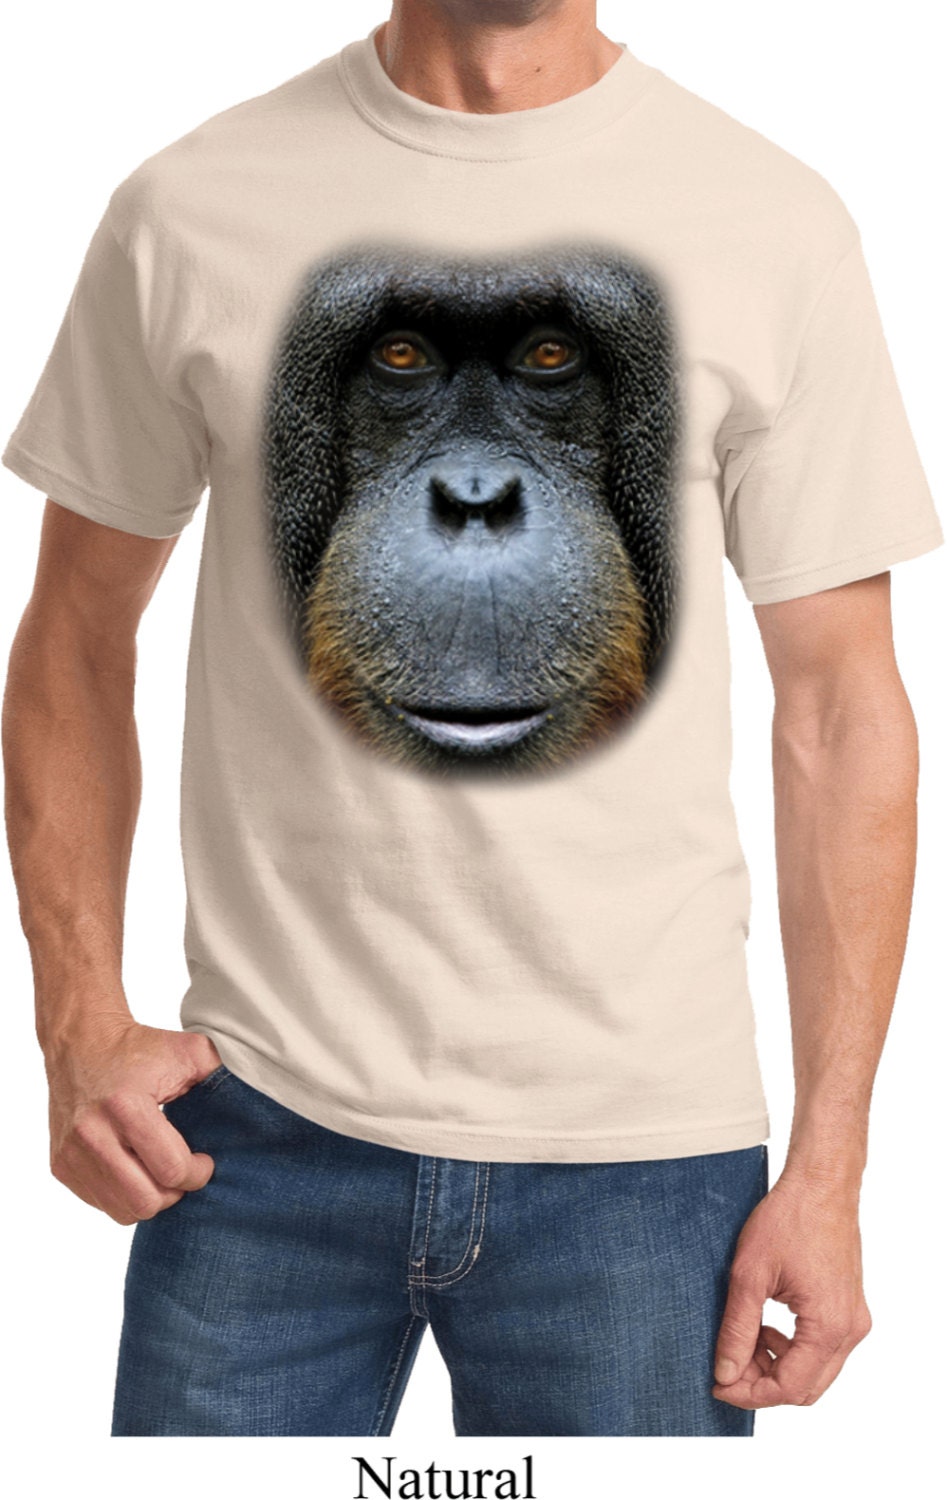 Men's Funny Shirt Big Orangutan Face Tee T-Shirt